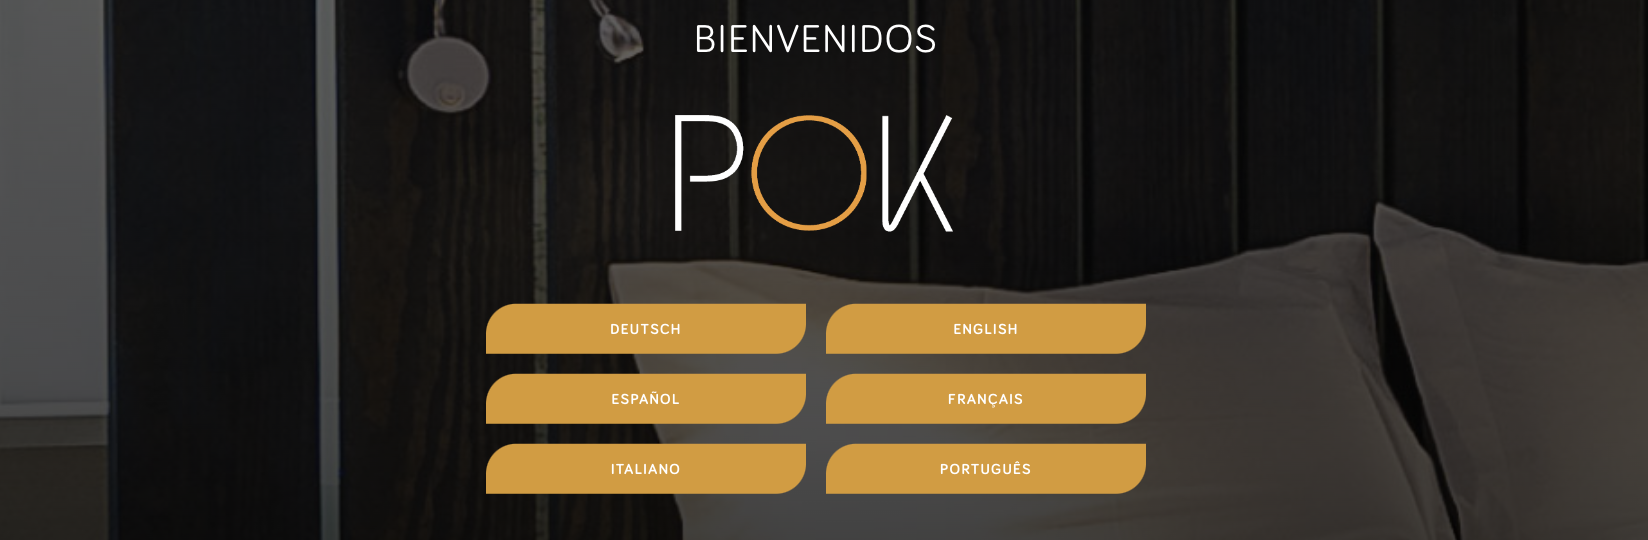 Avaliação POK Point of Kiosk: POK - Check-ins em 30 segundos - Appvizer